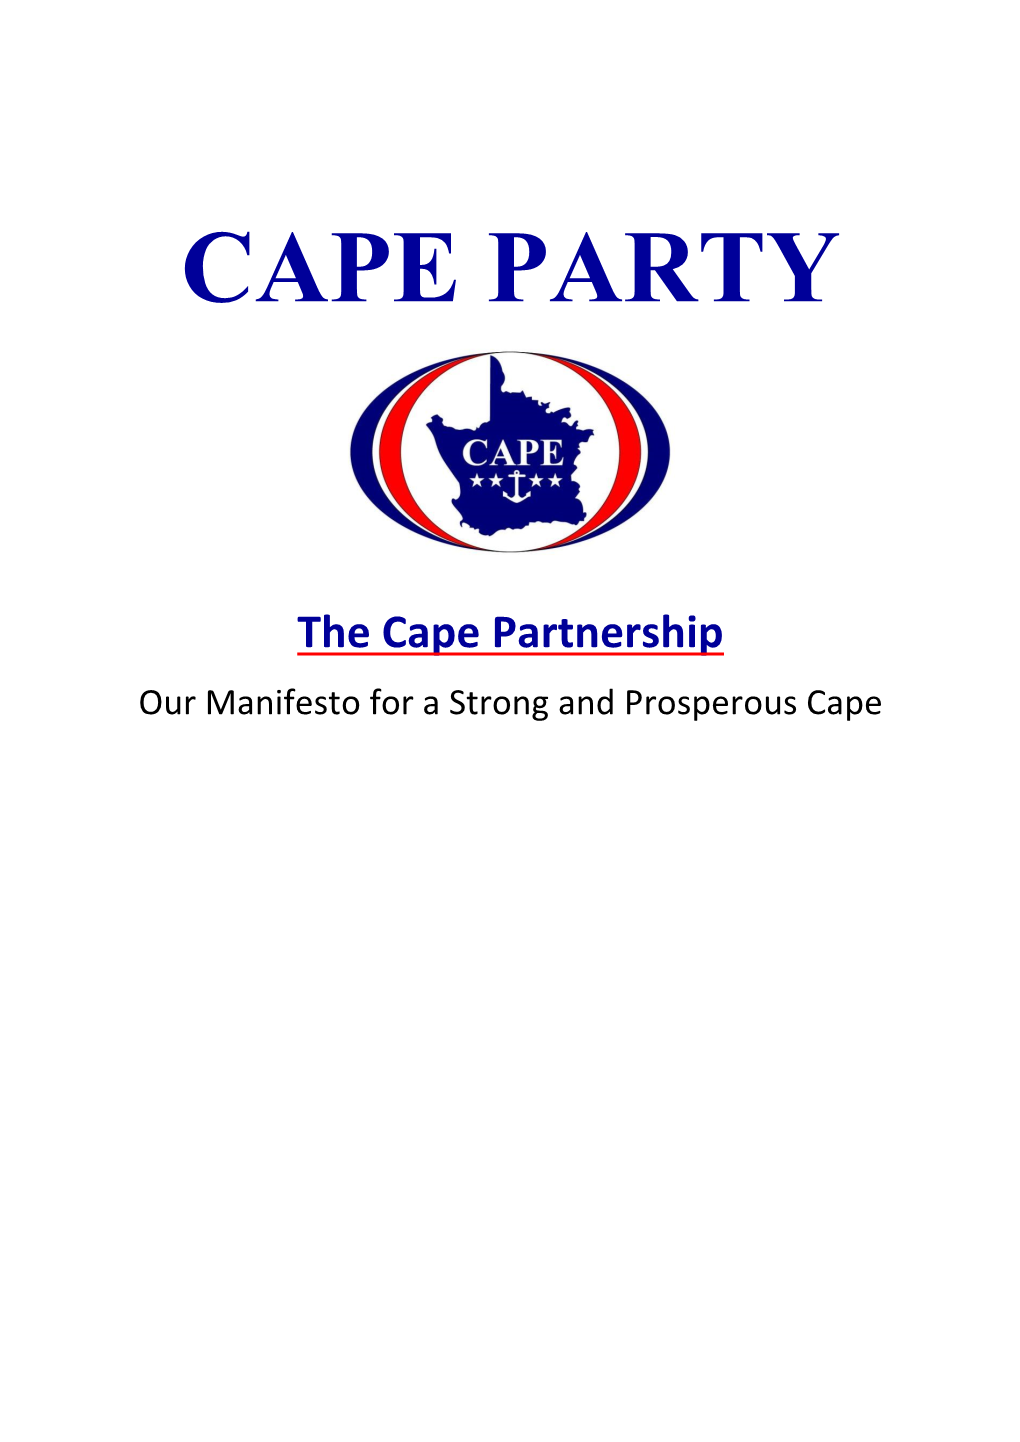 CAPE PARTY the Cape Partnership